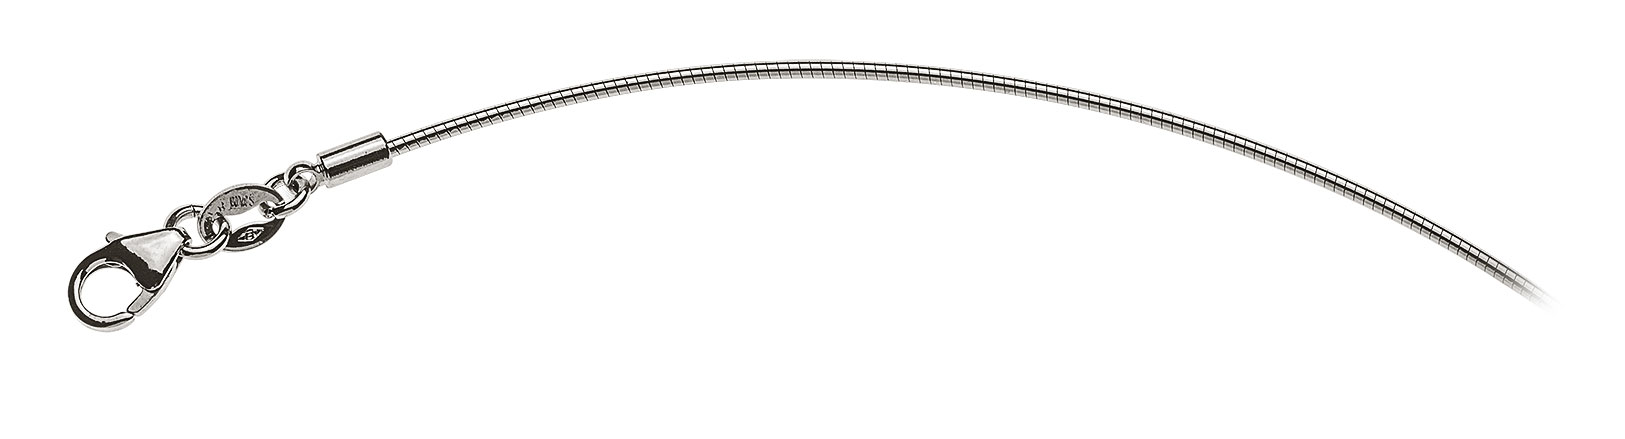 AURONOS Prestige Collier en or blanc 18K chaîne oméga 40cm 1.0mm